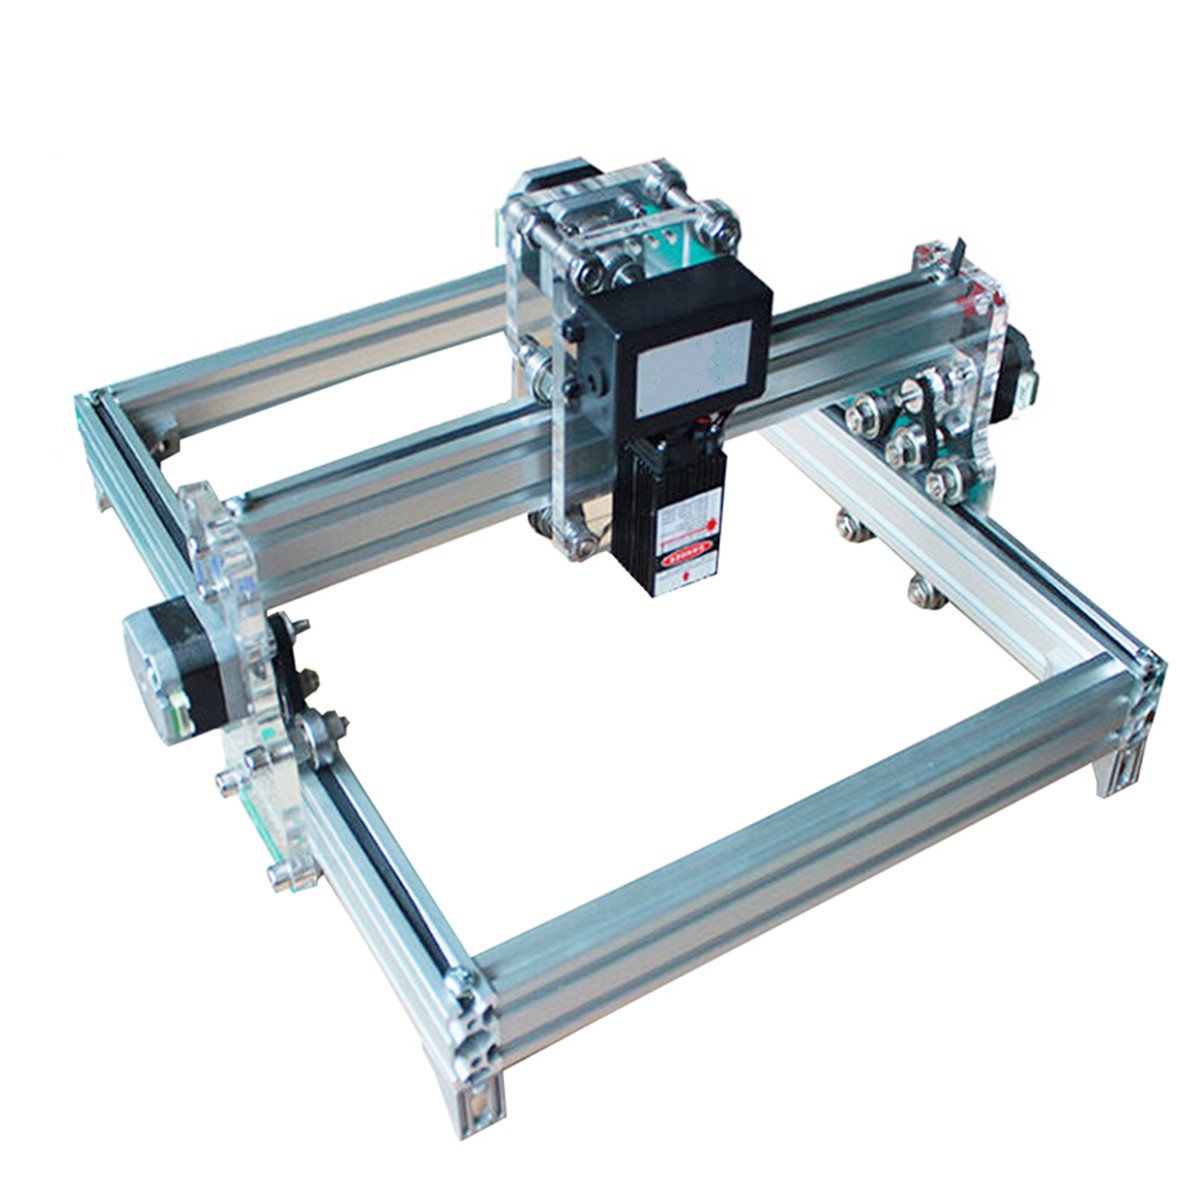 32cm*23 cm DIY 500mW Laser Engraving Machine Laser Engraver Printer Carving Desktop CNC Kit 2